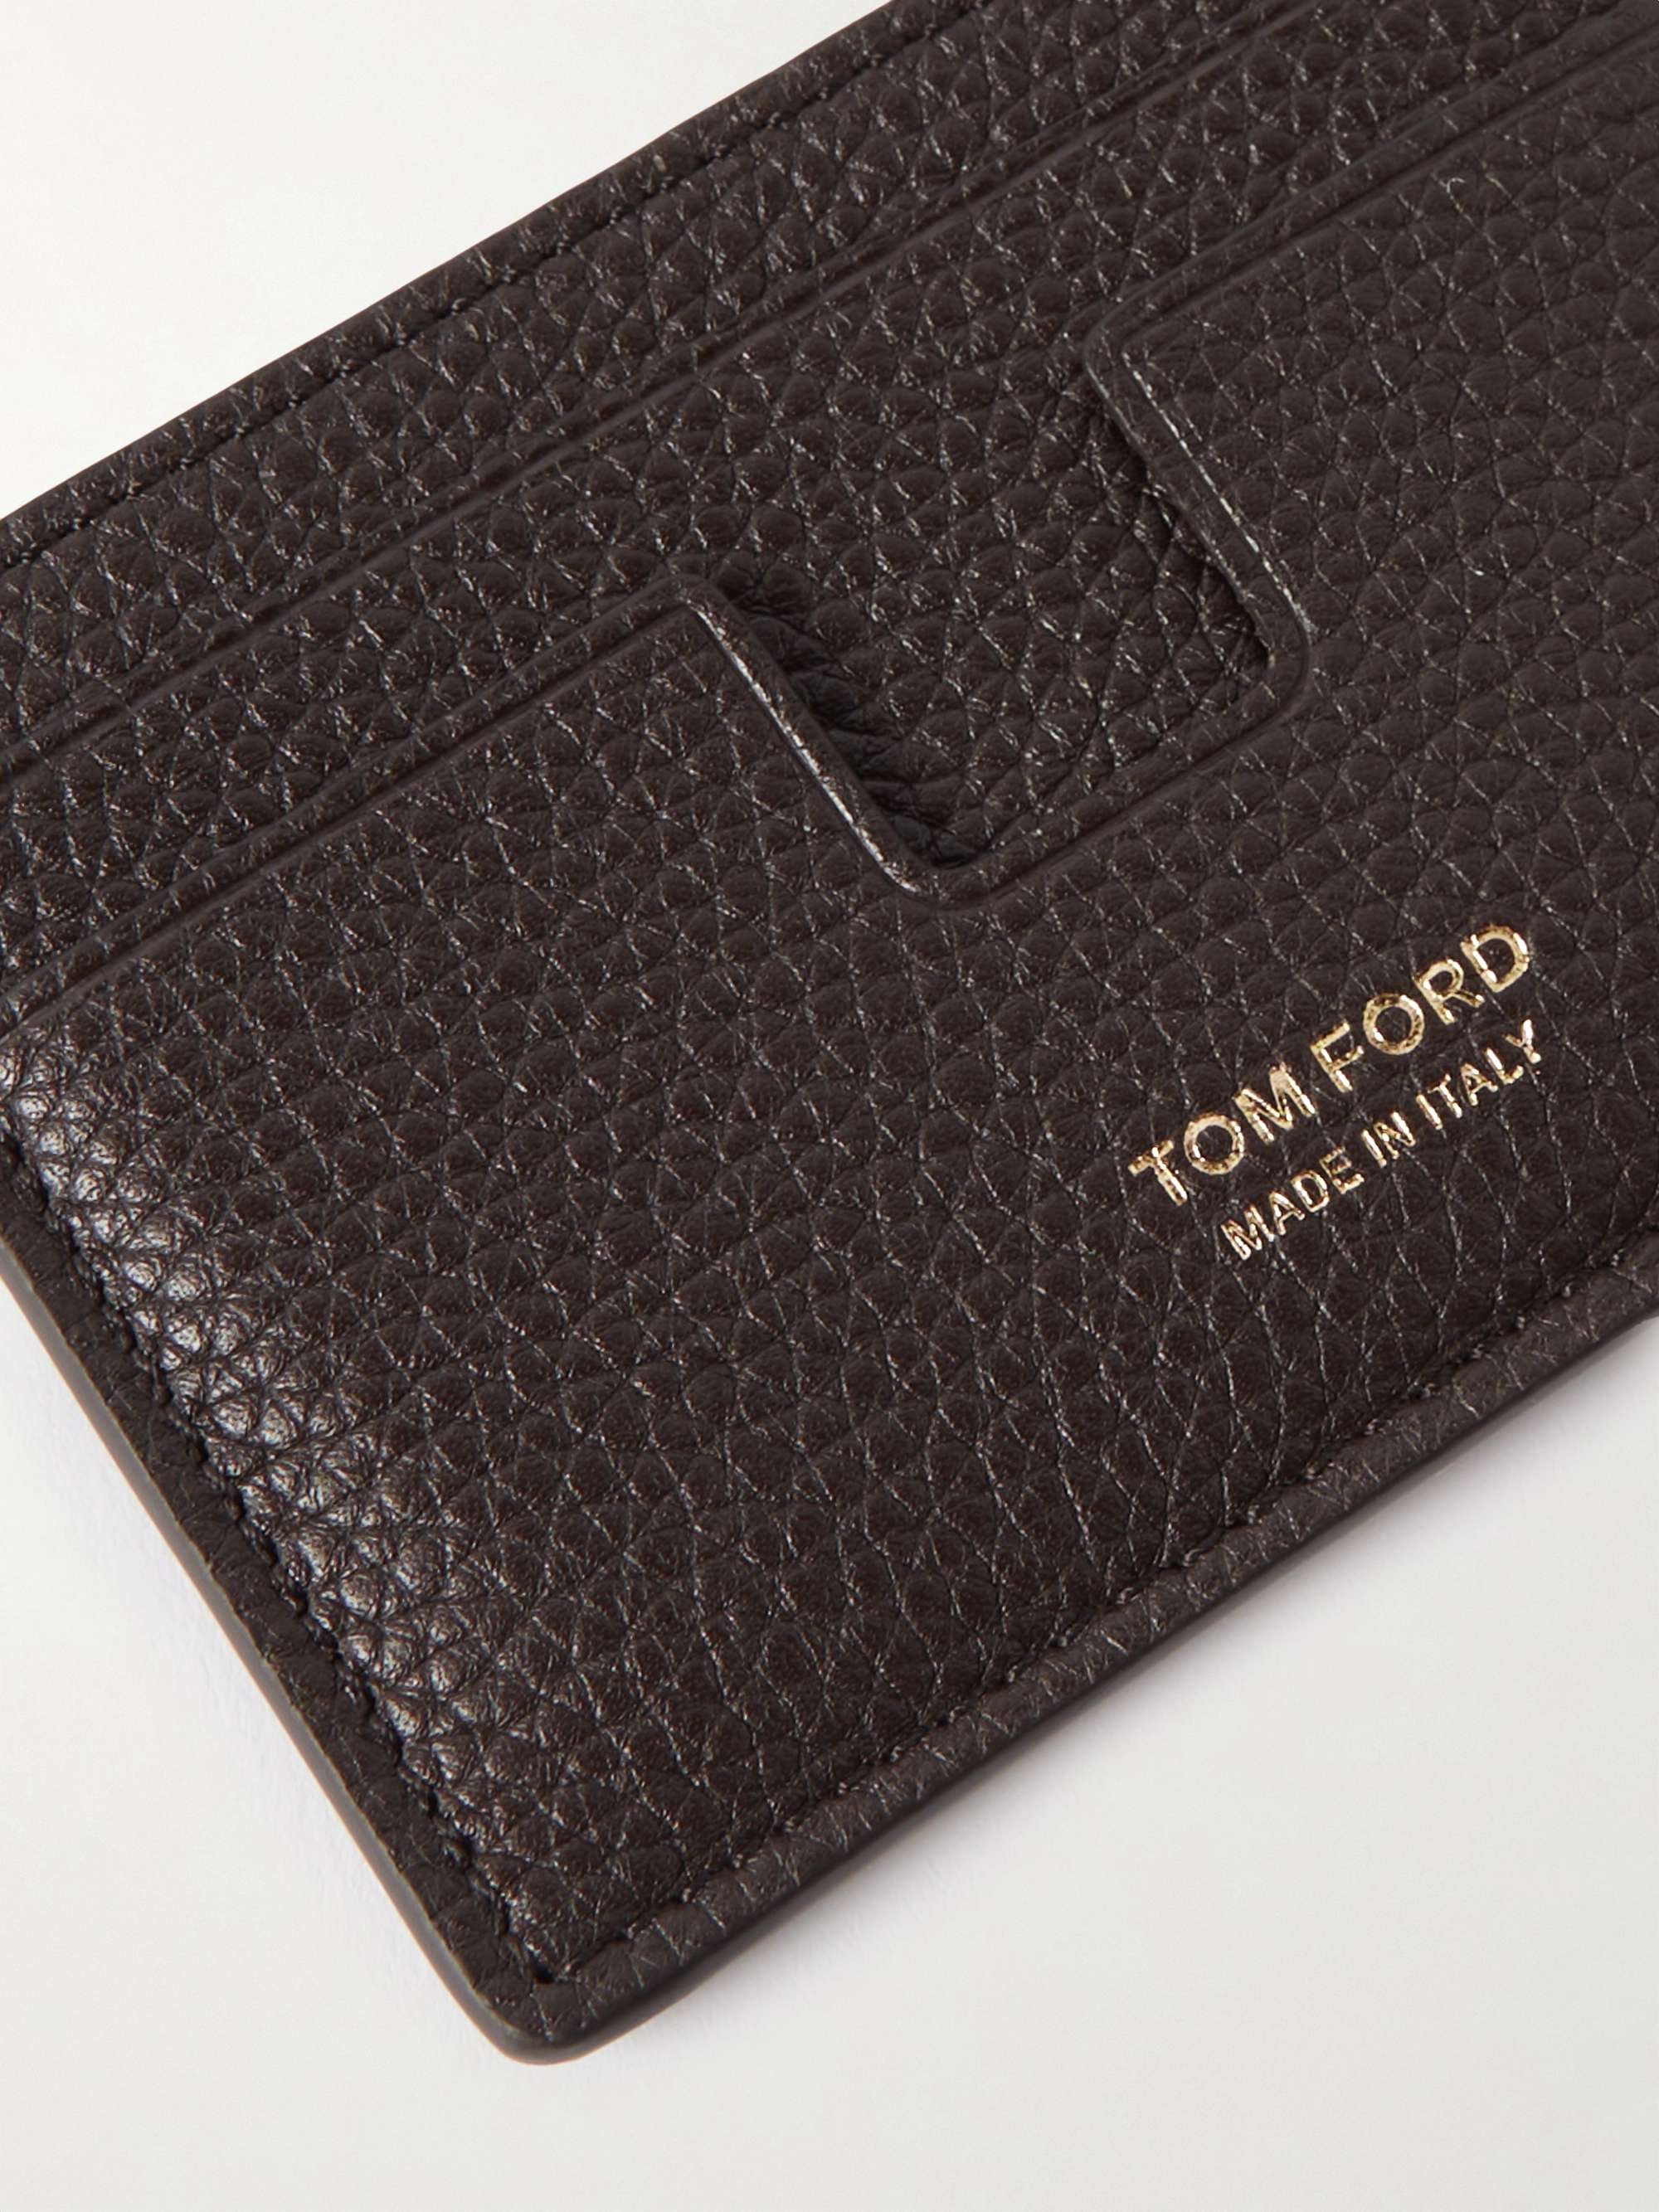 TOM FORD Full-Grain Leather Cardholder